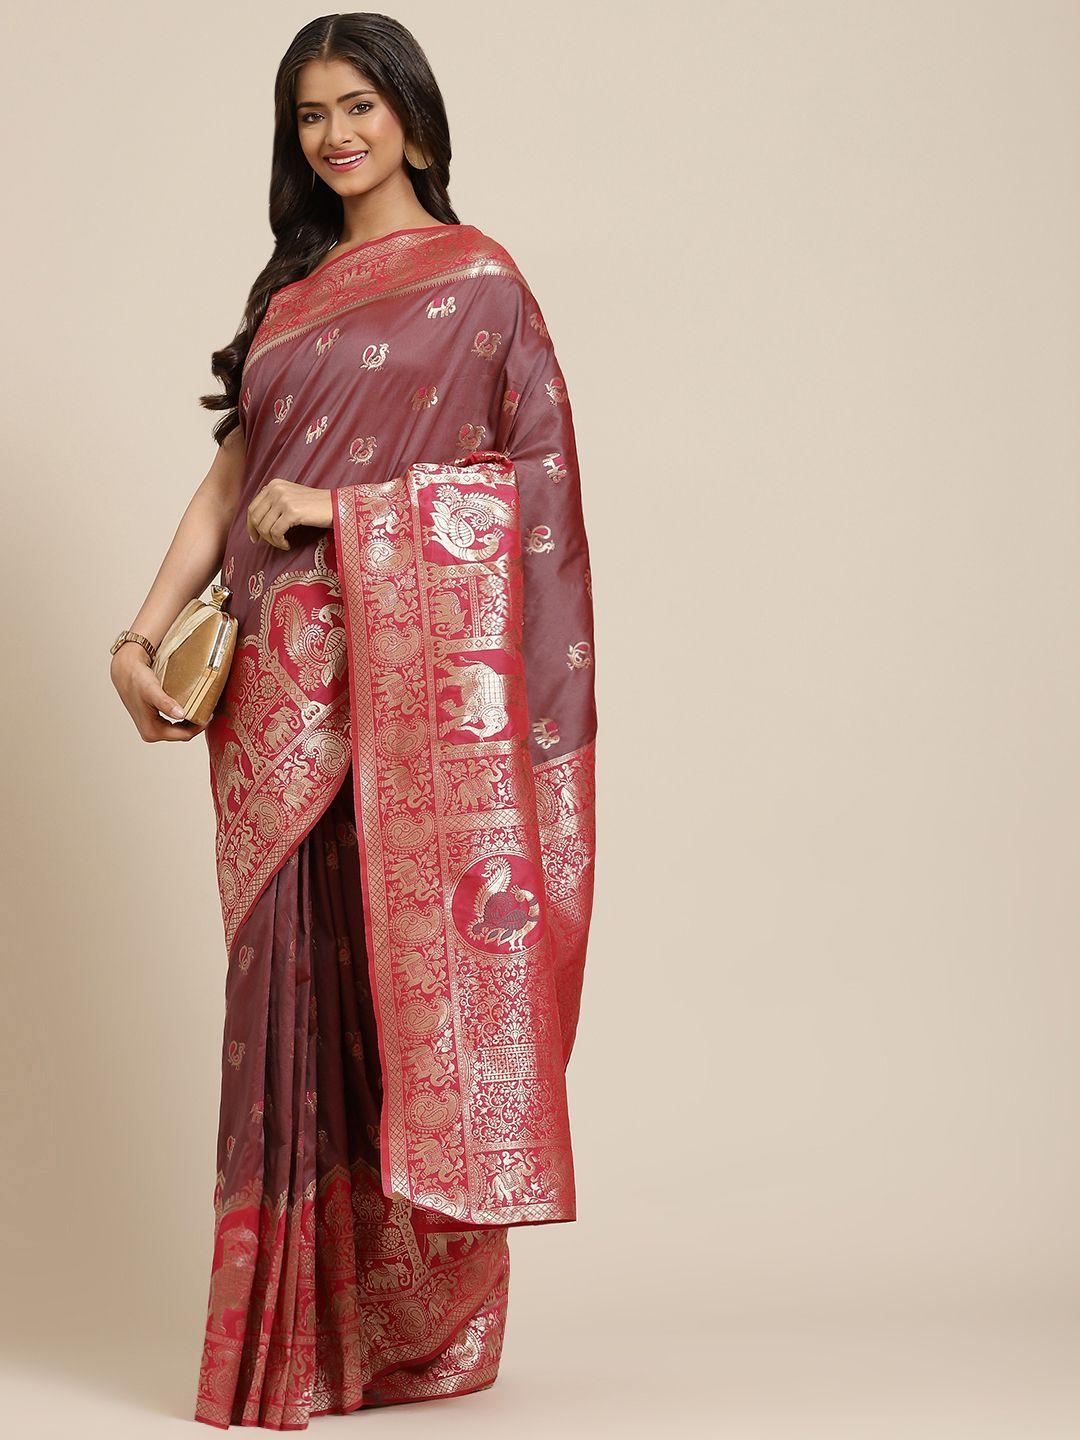 shubhvastra brown & pink ethnic motifs woven design banarasi saree